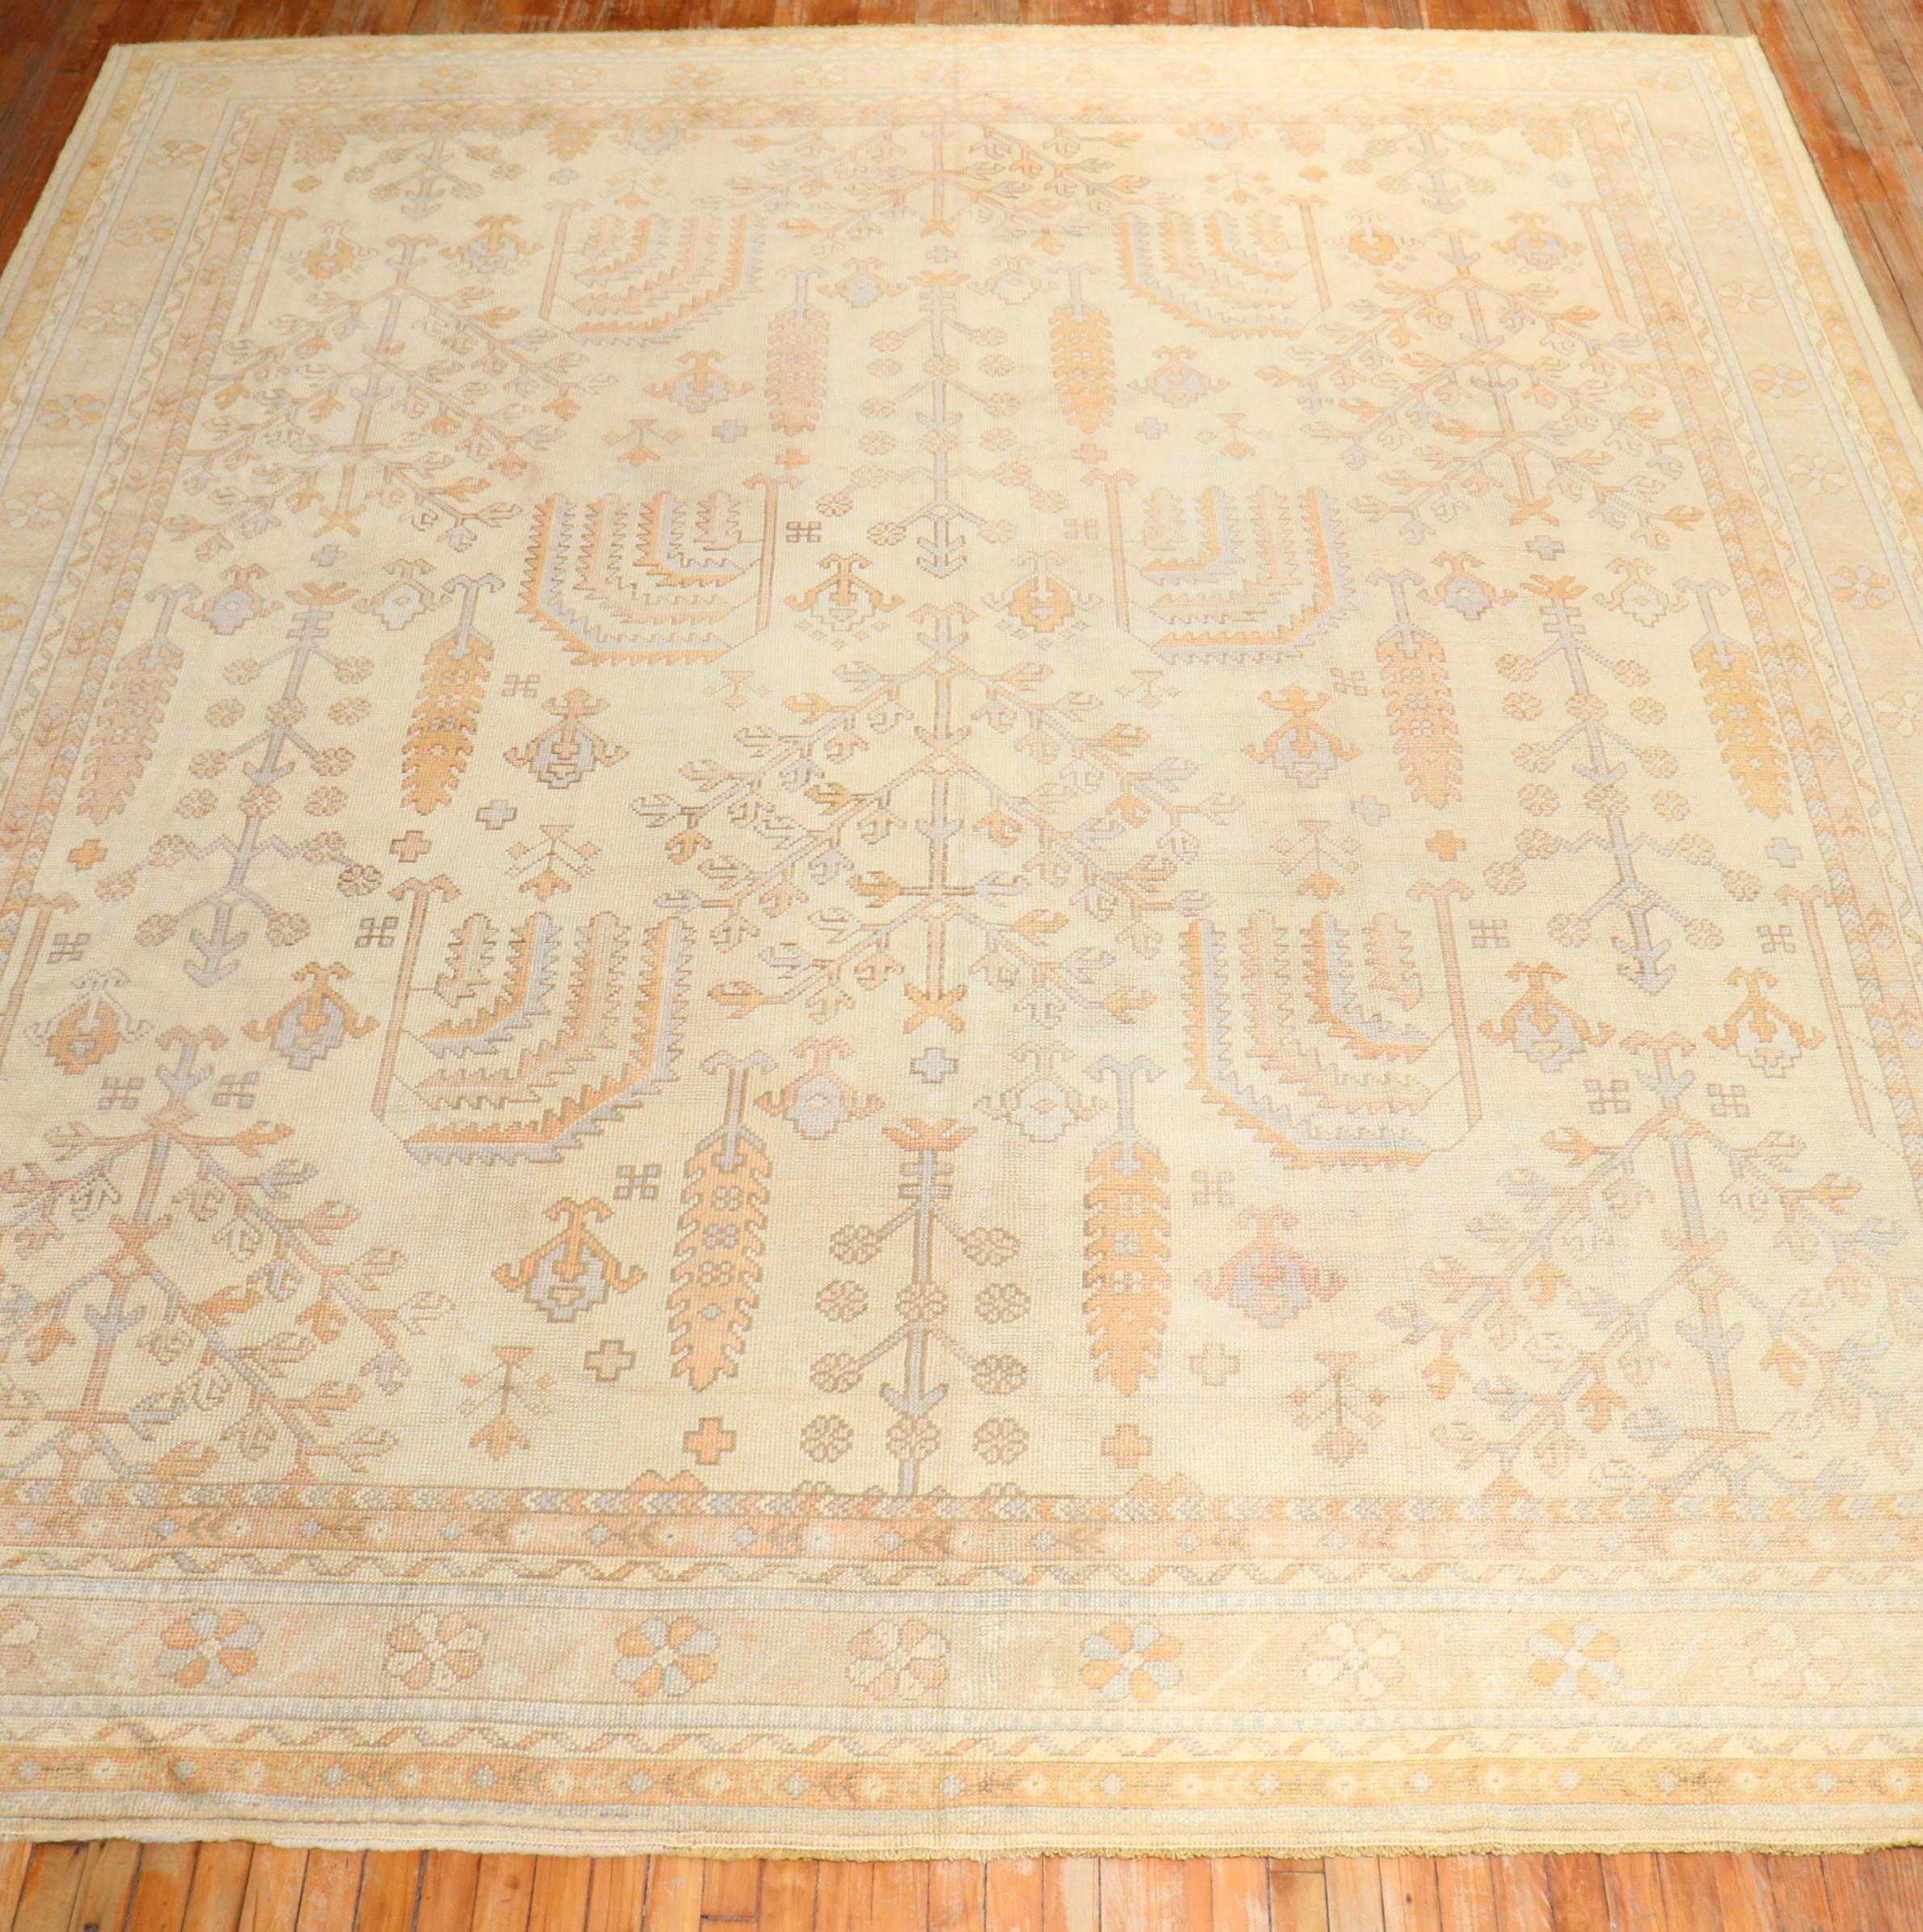 Ein quadratischer türkischer Oushak-Teppich in Zimmergröße aus dem frühen 20. Jahrhundert mit einem Weidenbaum-Motiv auf elfenbeinfarbenem Grund

Maße: 11'1'' x 12'8